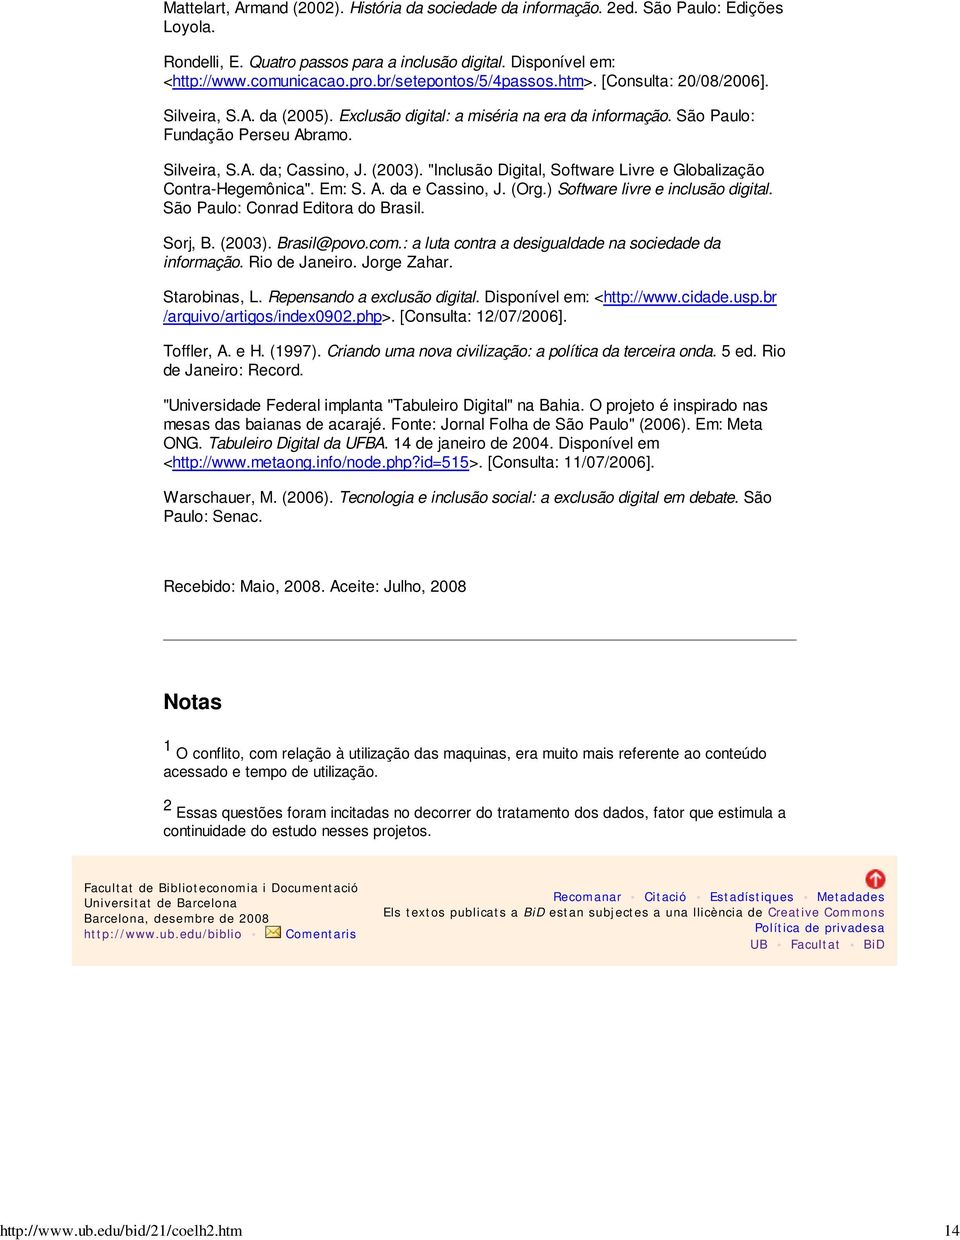 São Paulo: Fundação Perseu Abramo. Silveira, S.A. da; Cassino, J. (2003). "Inclusão Digital, Software Livre e Globalização Contra-Hegemônica". Em: S. A. da e Cassino, J. (Org.